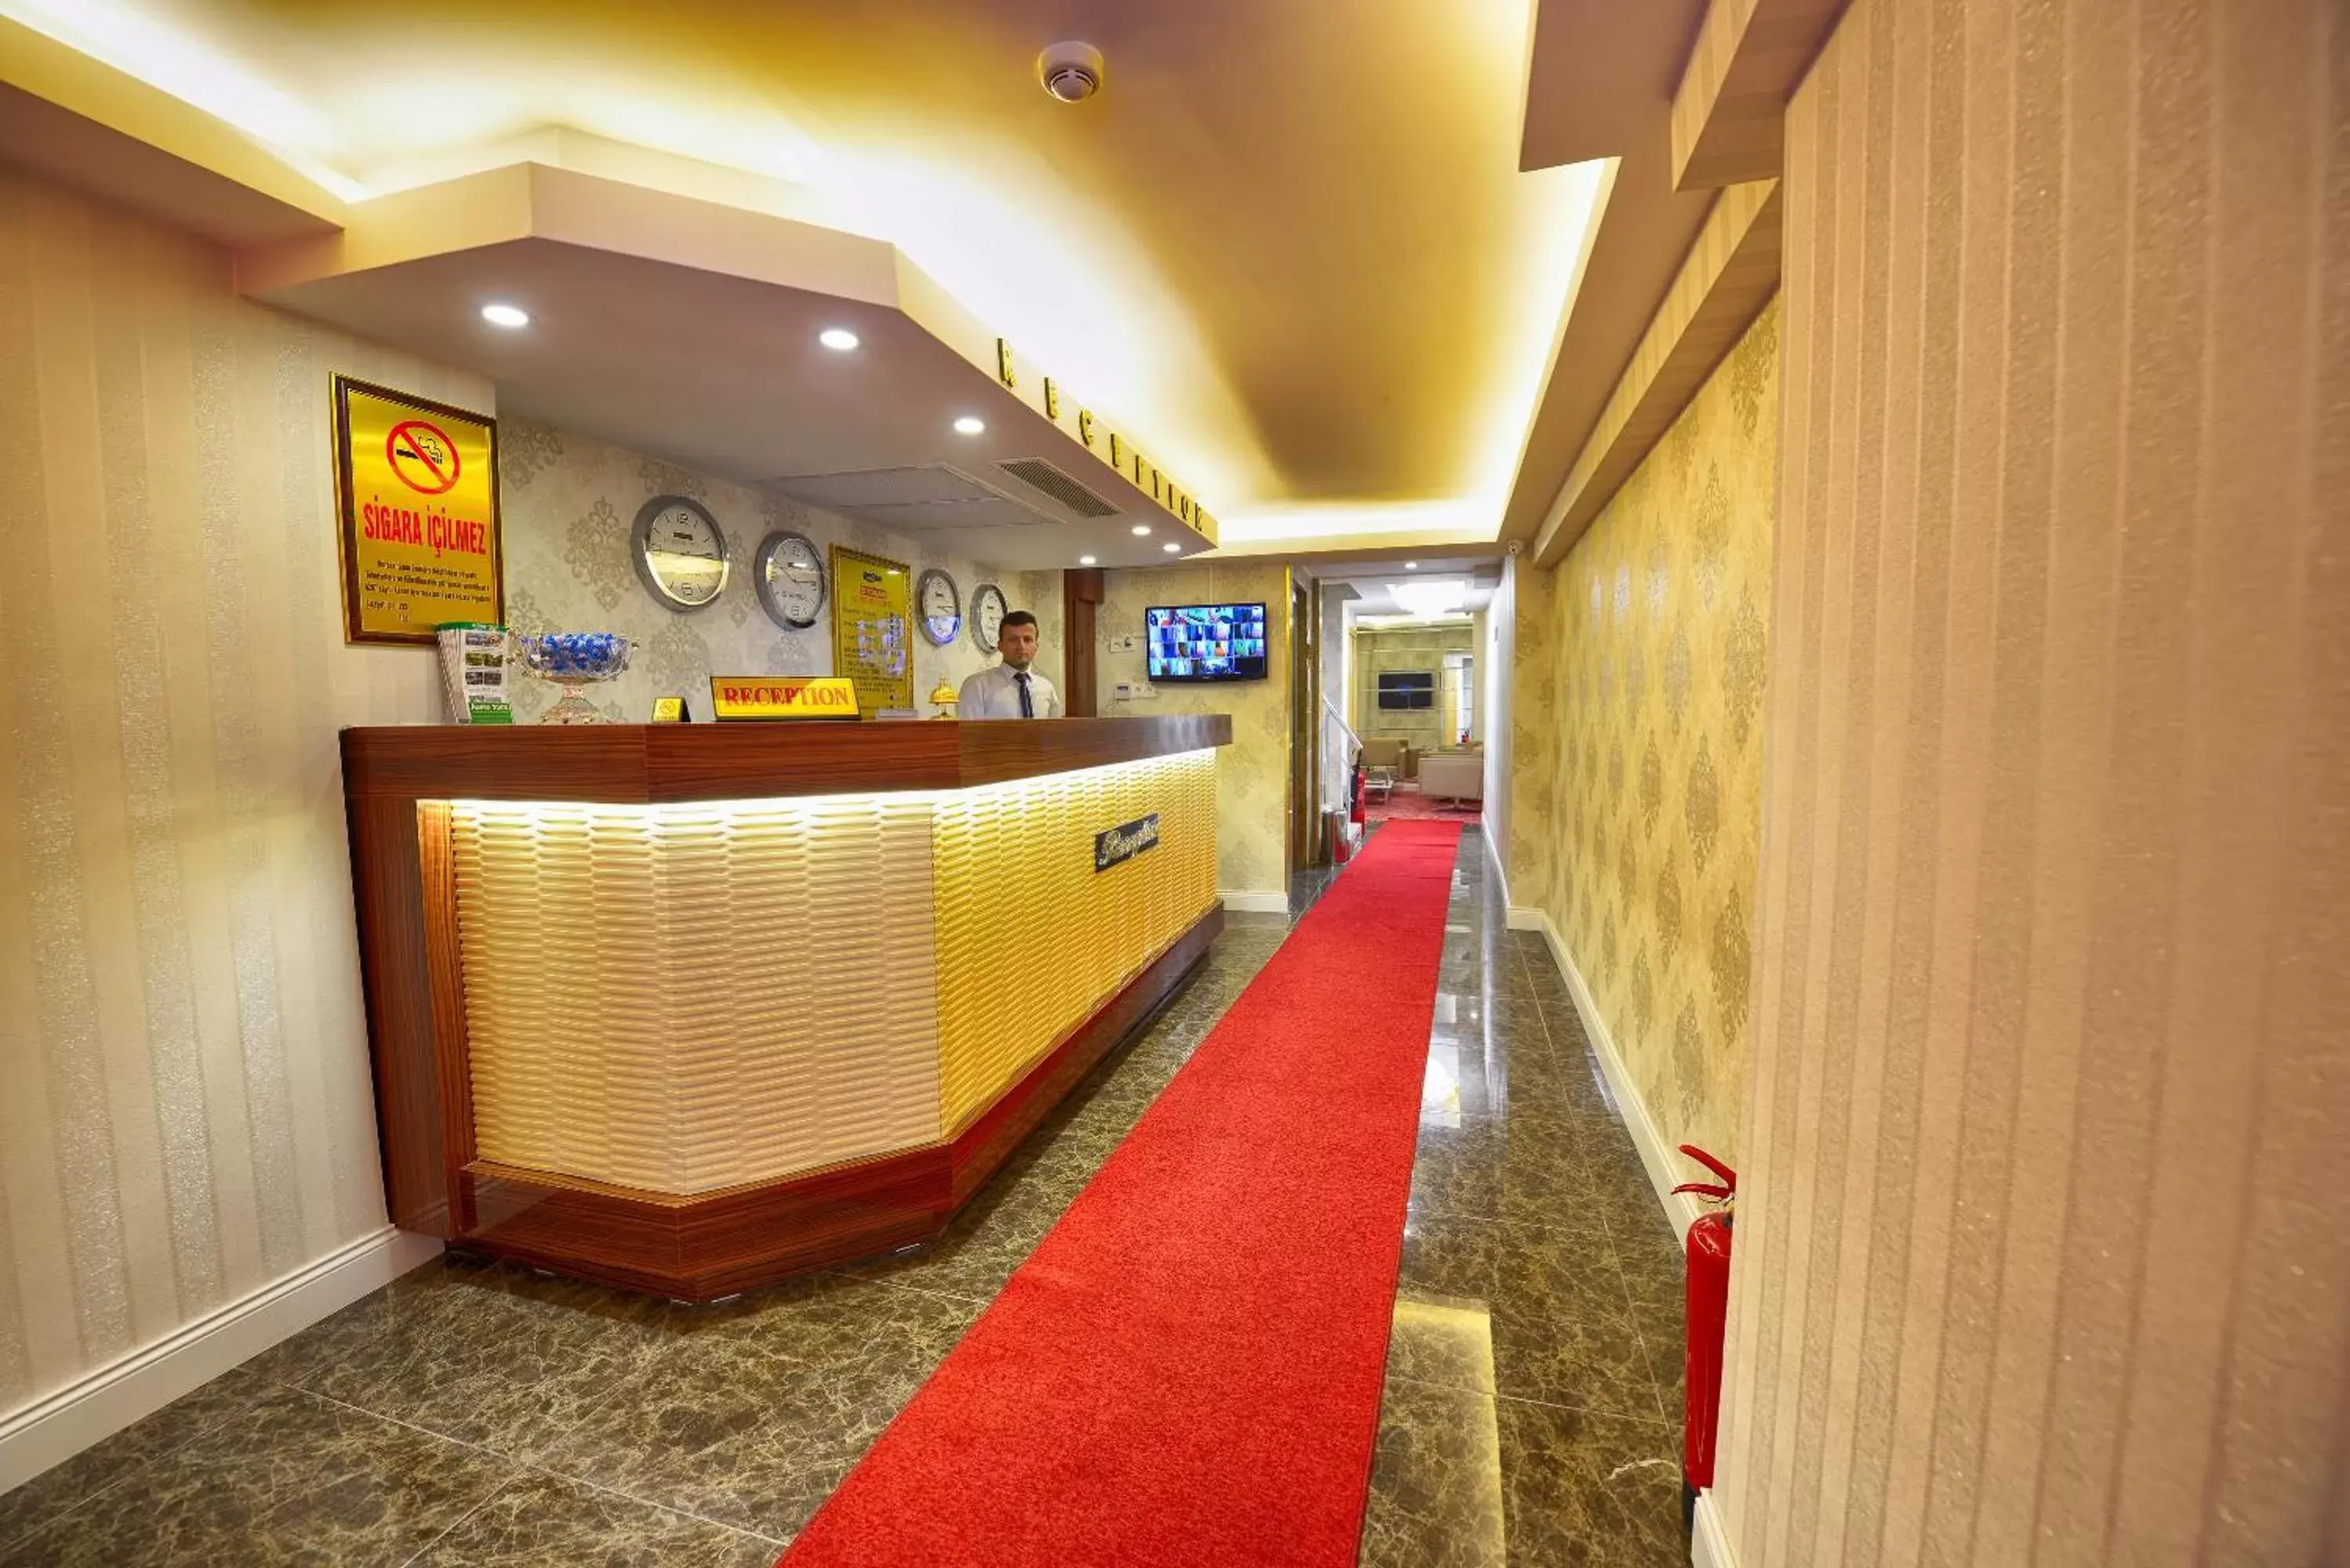 Lobby or reception in Florenta Hotel